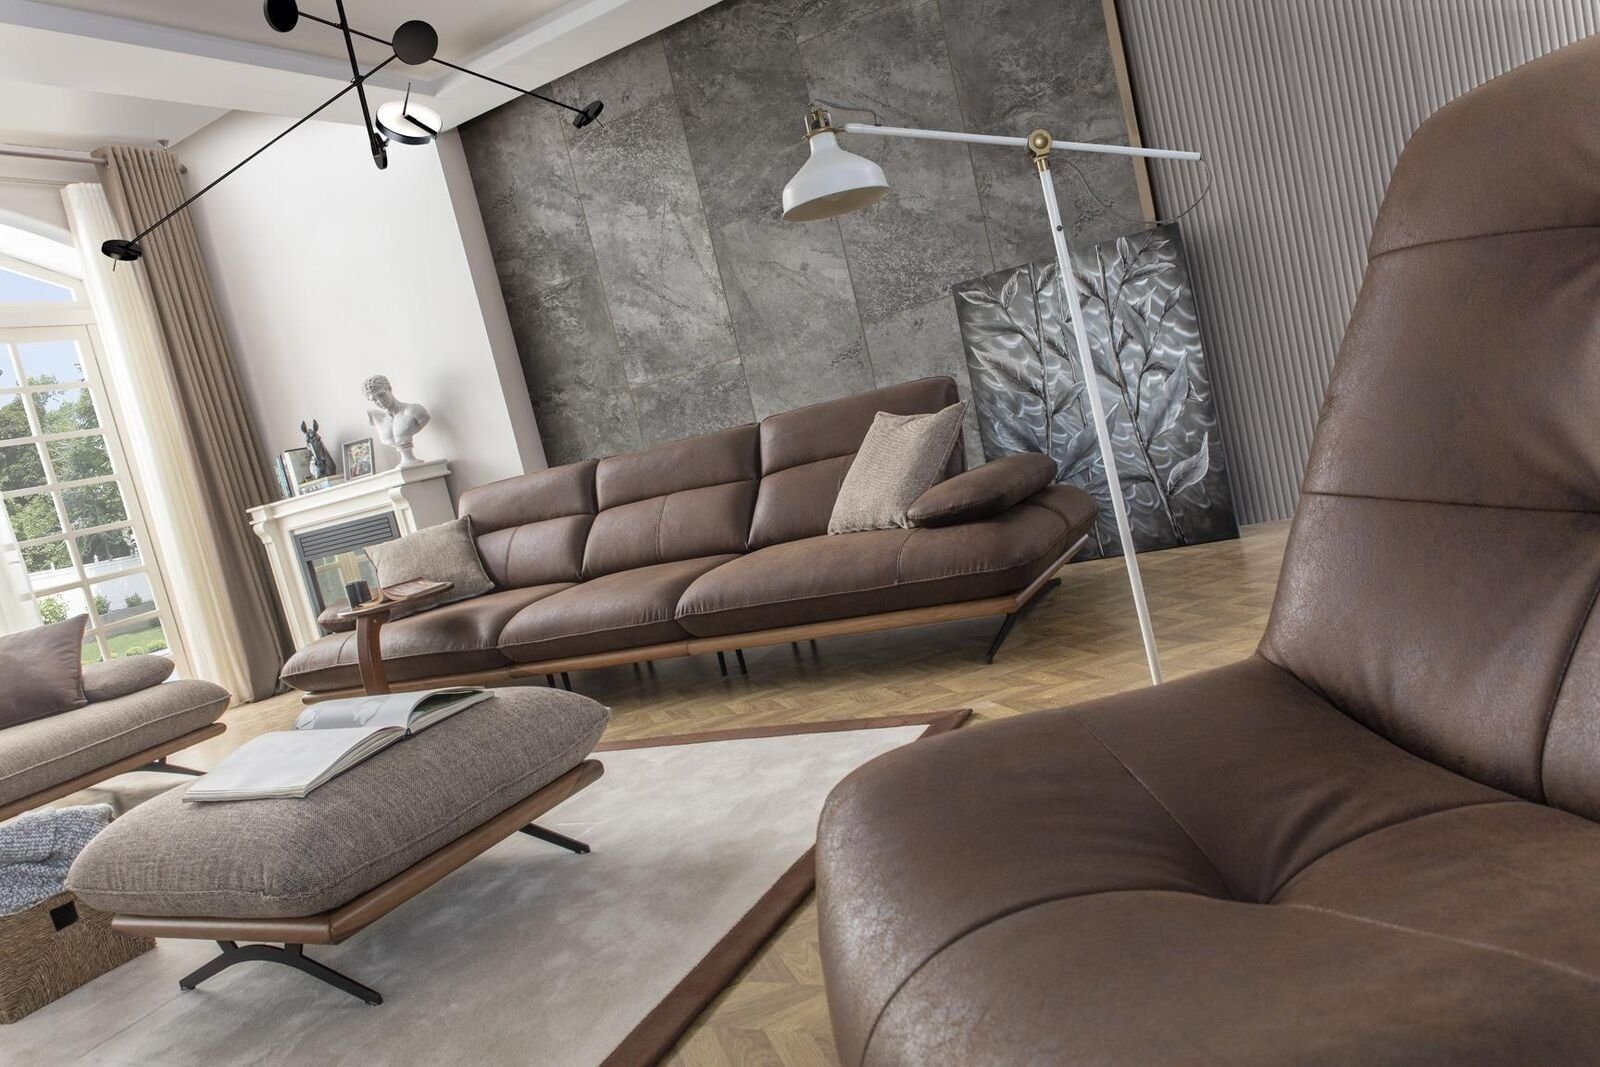 JVmoebel Sofa Viersitziges Sofa 4 Sitzer Luxus, 1 Wohnzimmer Sofas Braun Teile Kunstleder